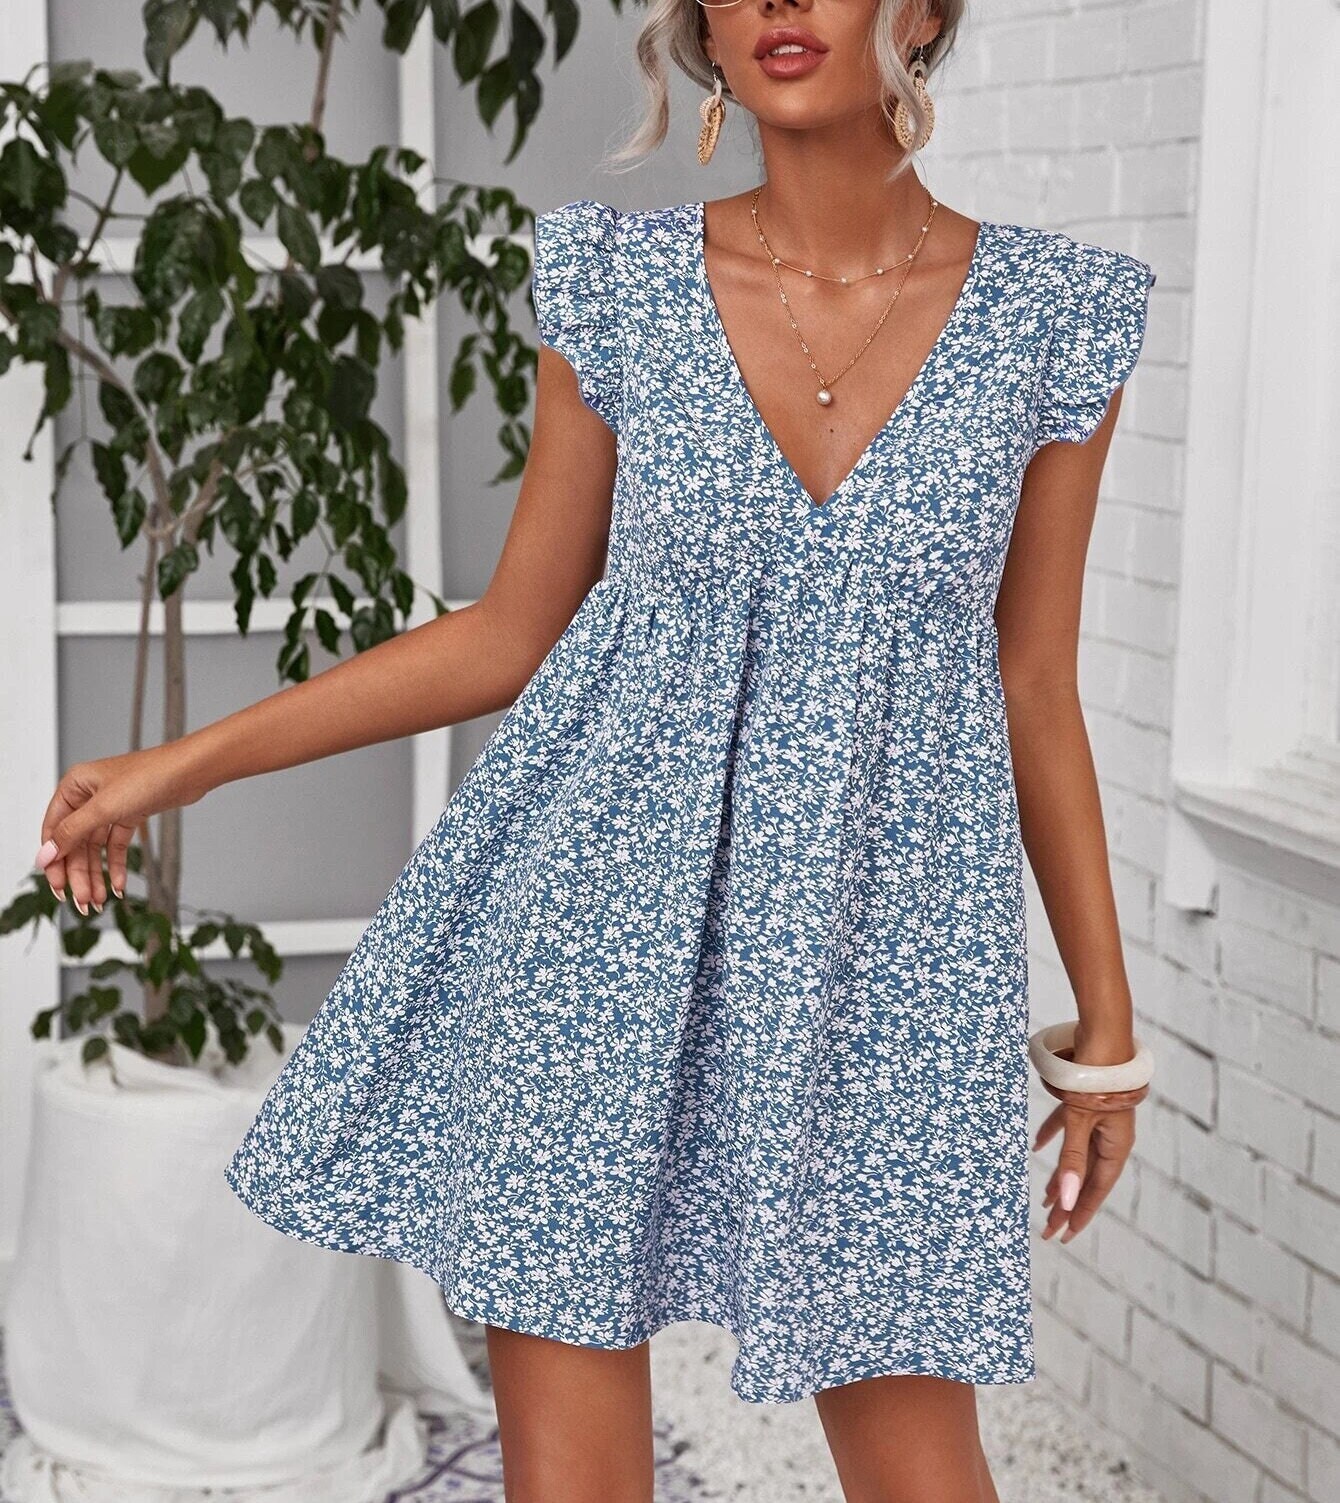 Summer Dress Sewing Pattern Ruffle Dress Summer Dress - Etsy